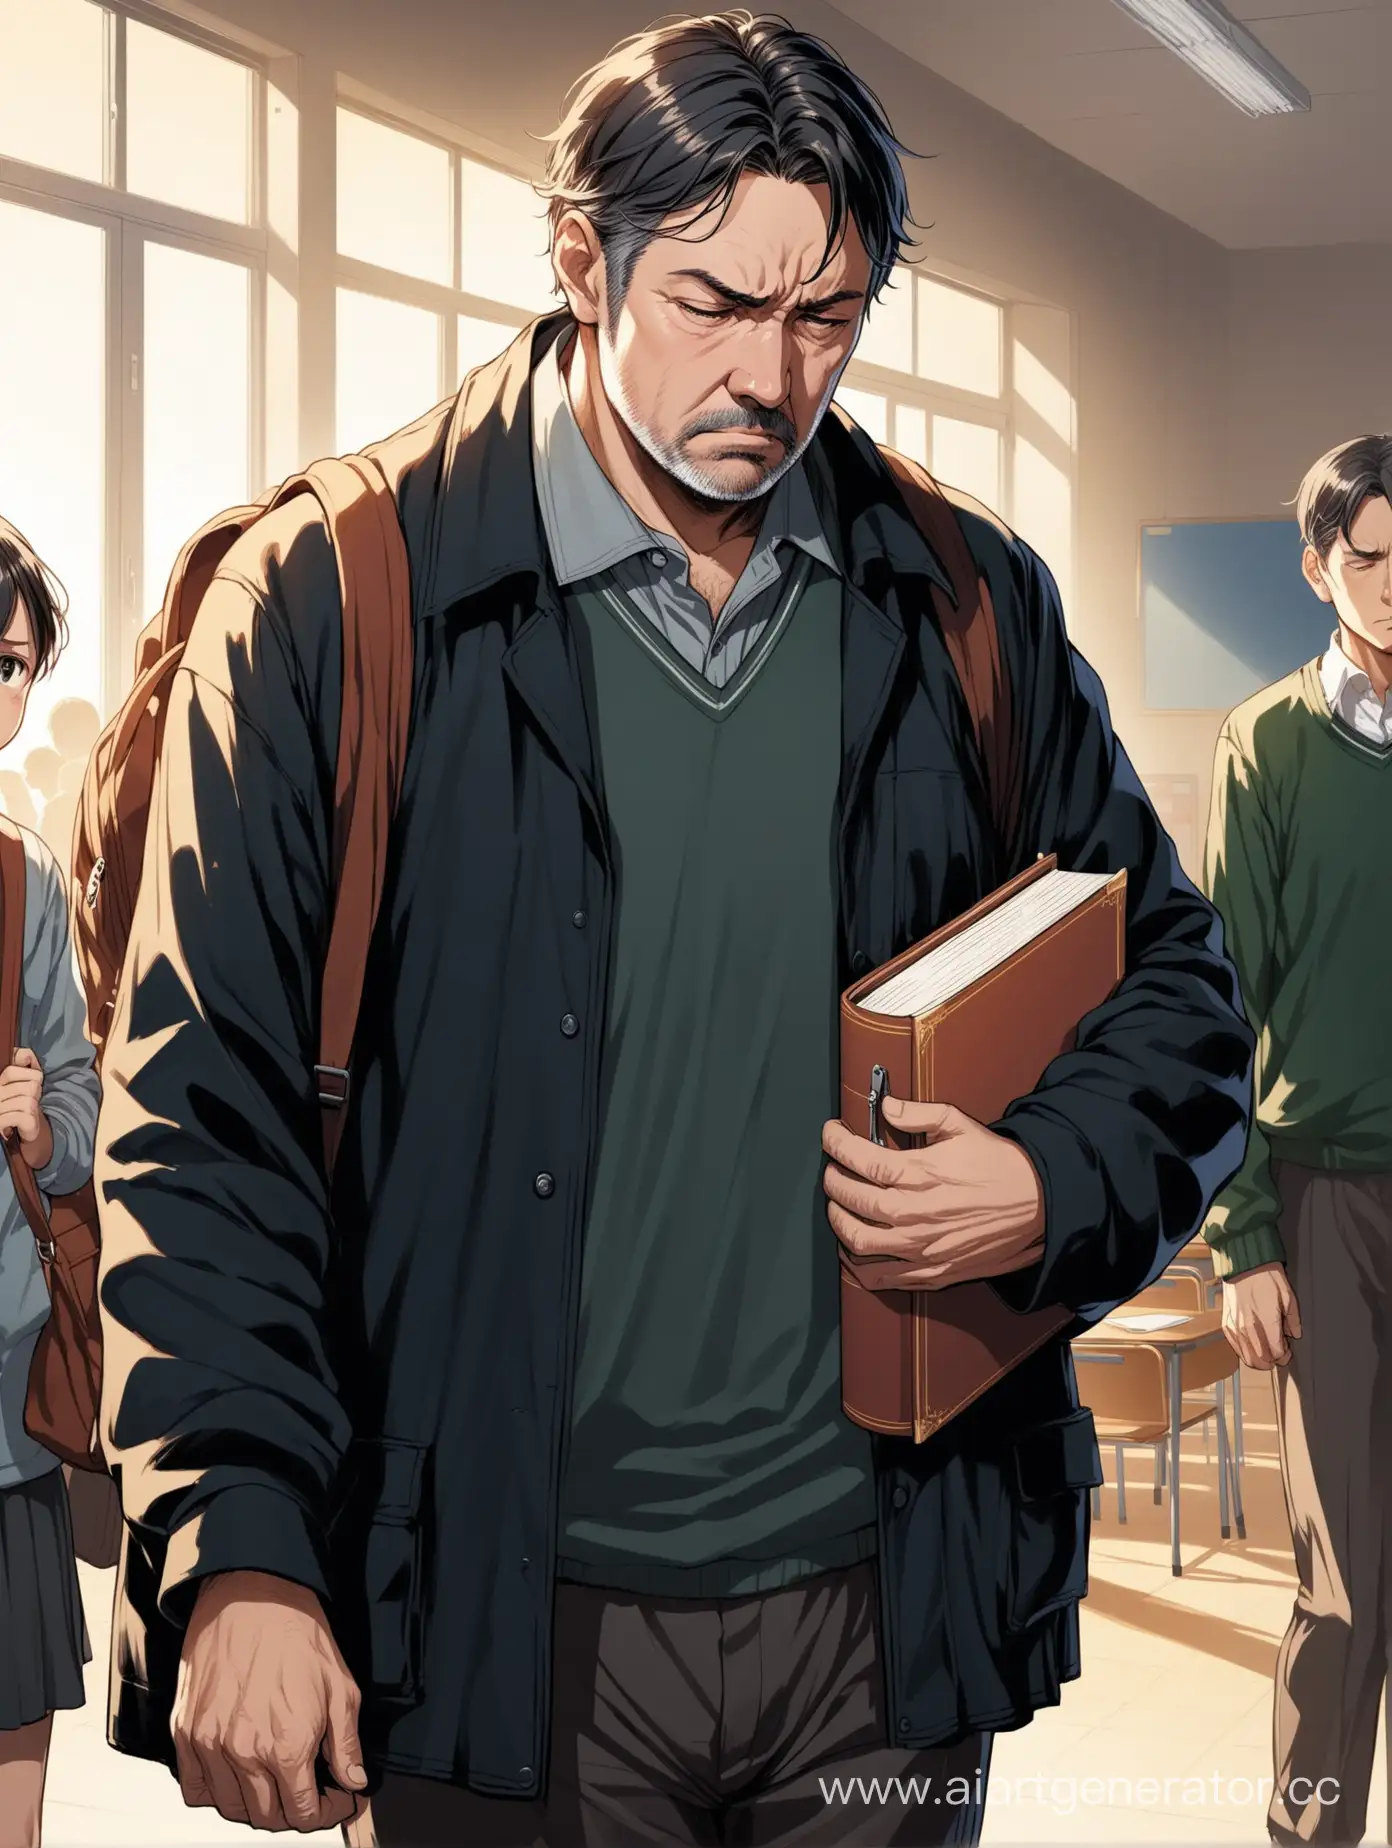 обложка для книги, мужчина средних лет в темной одежде, усталый и несчастный вид, в руках личные вещи подростка, находится в школе